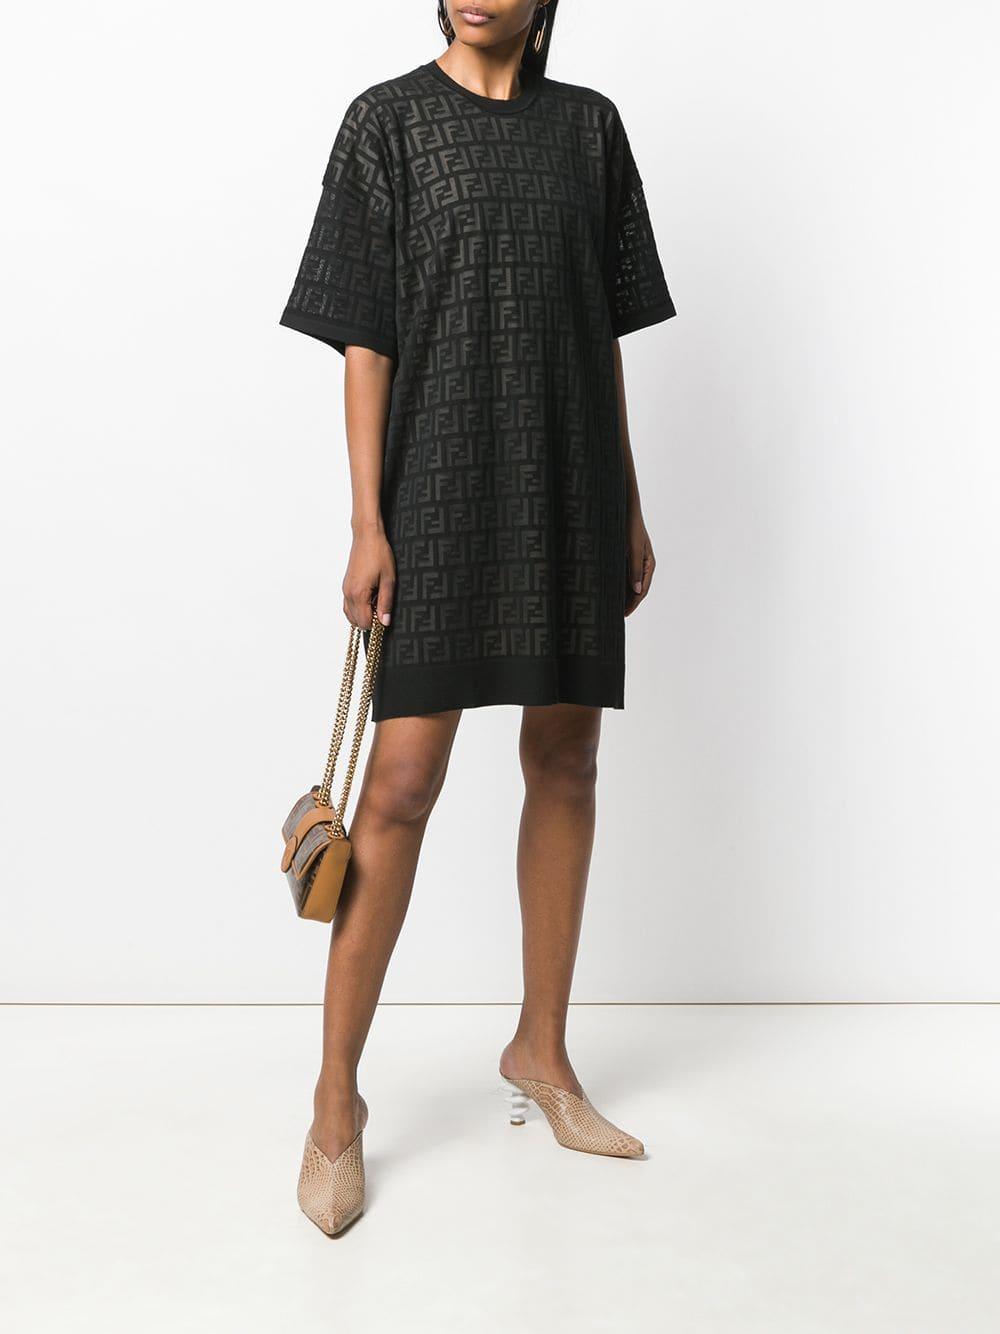 Fendi Inlaid Ff Motif T-shirt Dress in Black | Lyst